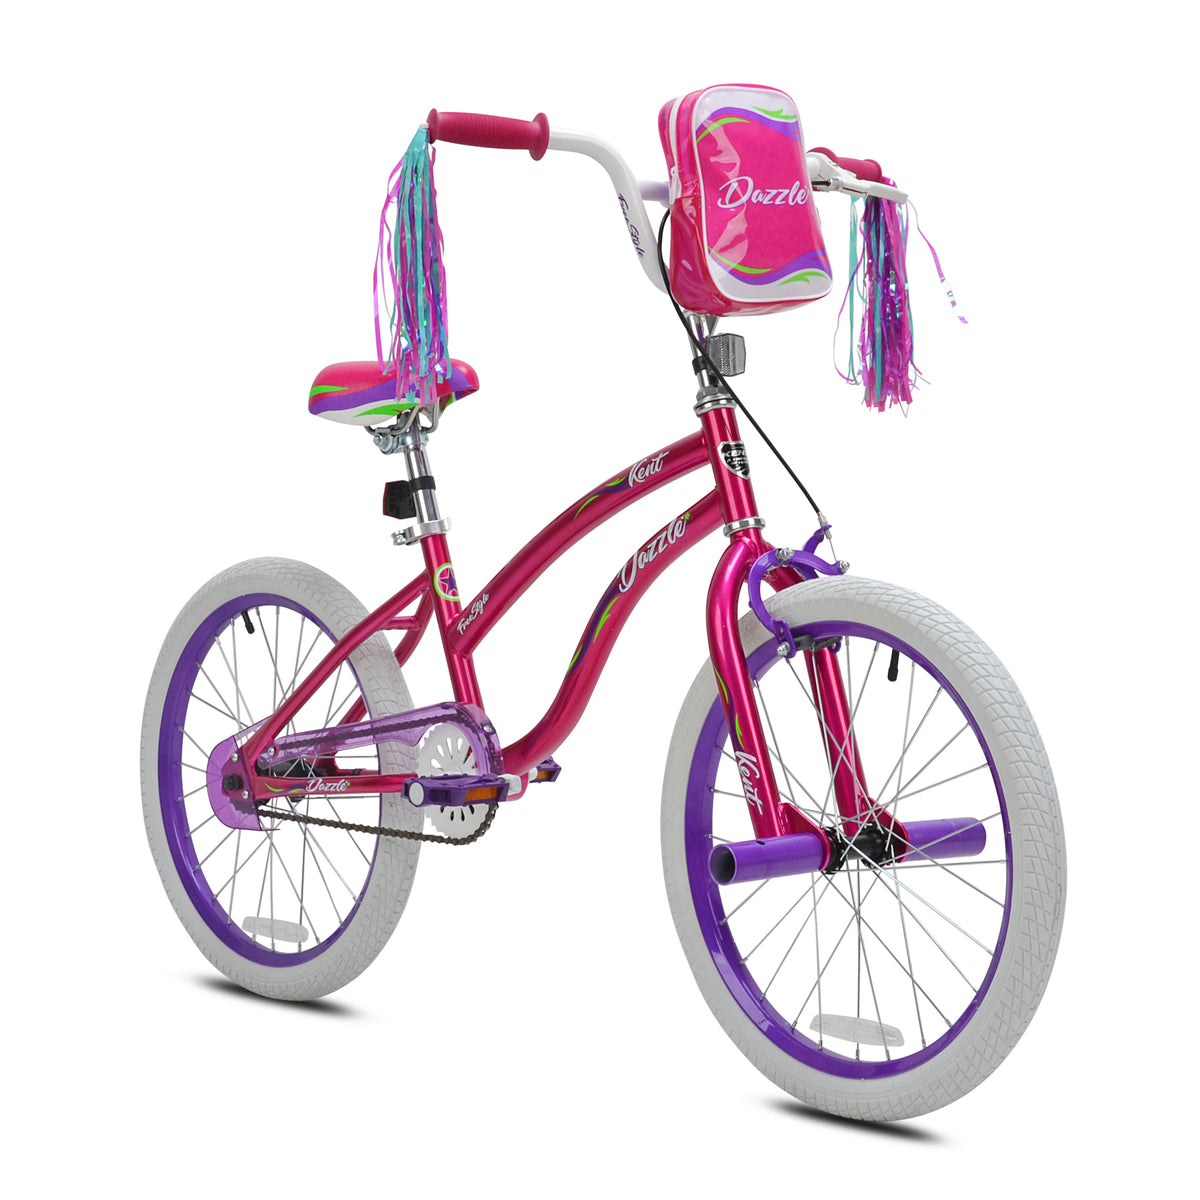 20" Kent Dazzle | BMX Bike for Kids Ages 7-13